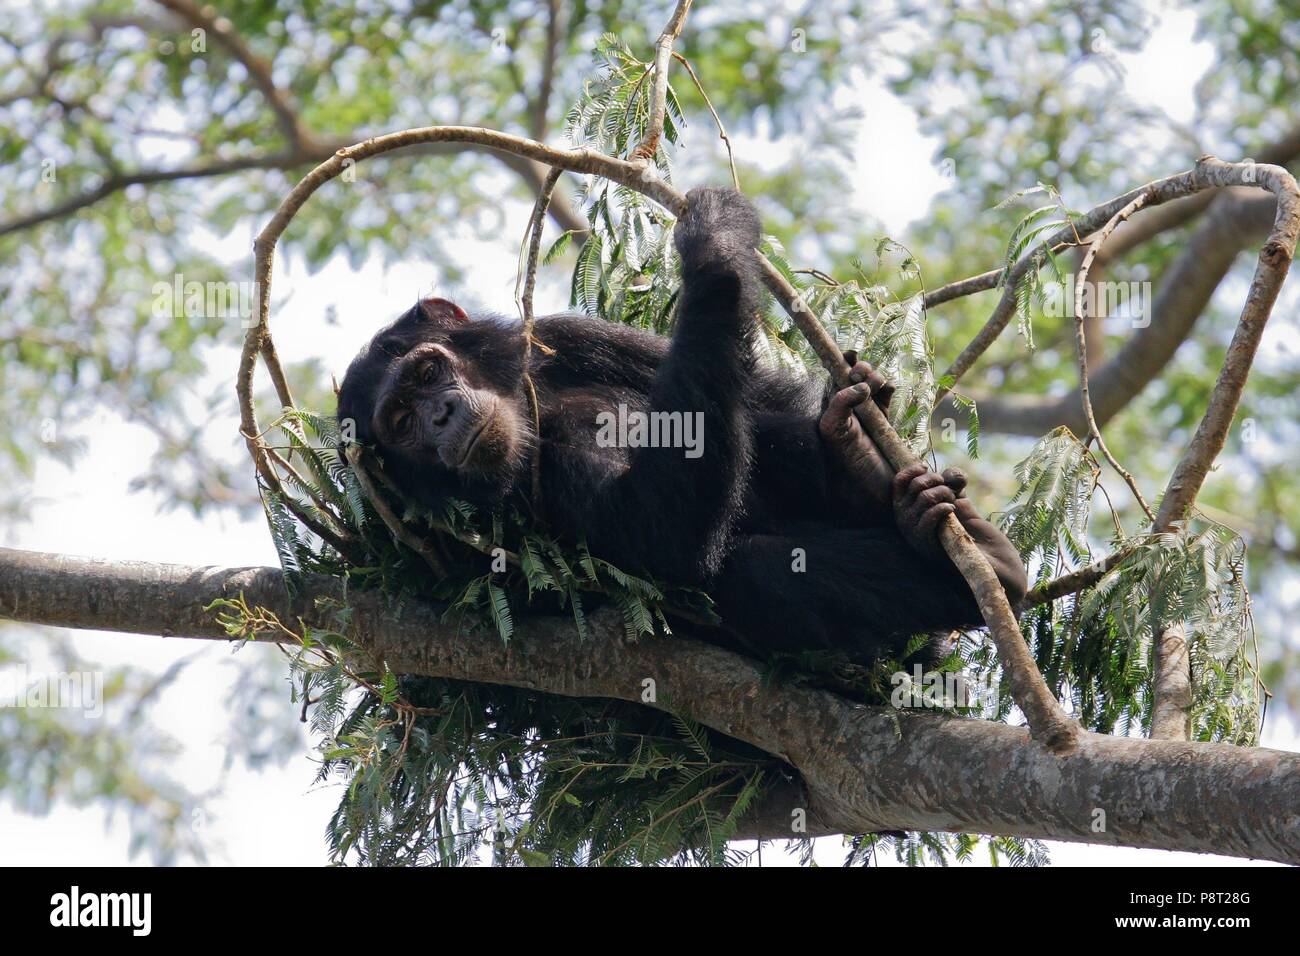 Östliche Schimpanse (Pan troglodytes schweinfurthii) in schlafen Nest in Baumkronen liegt, Gombe Stream Nationalpark, Tansania | Verwendung weltweit Stockfoto